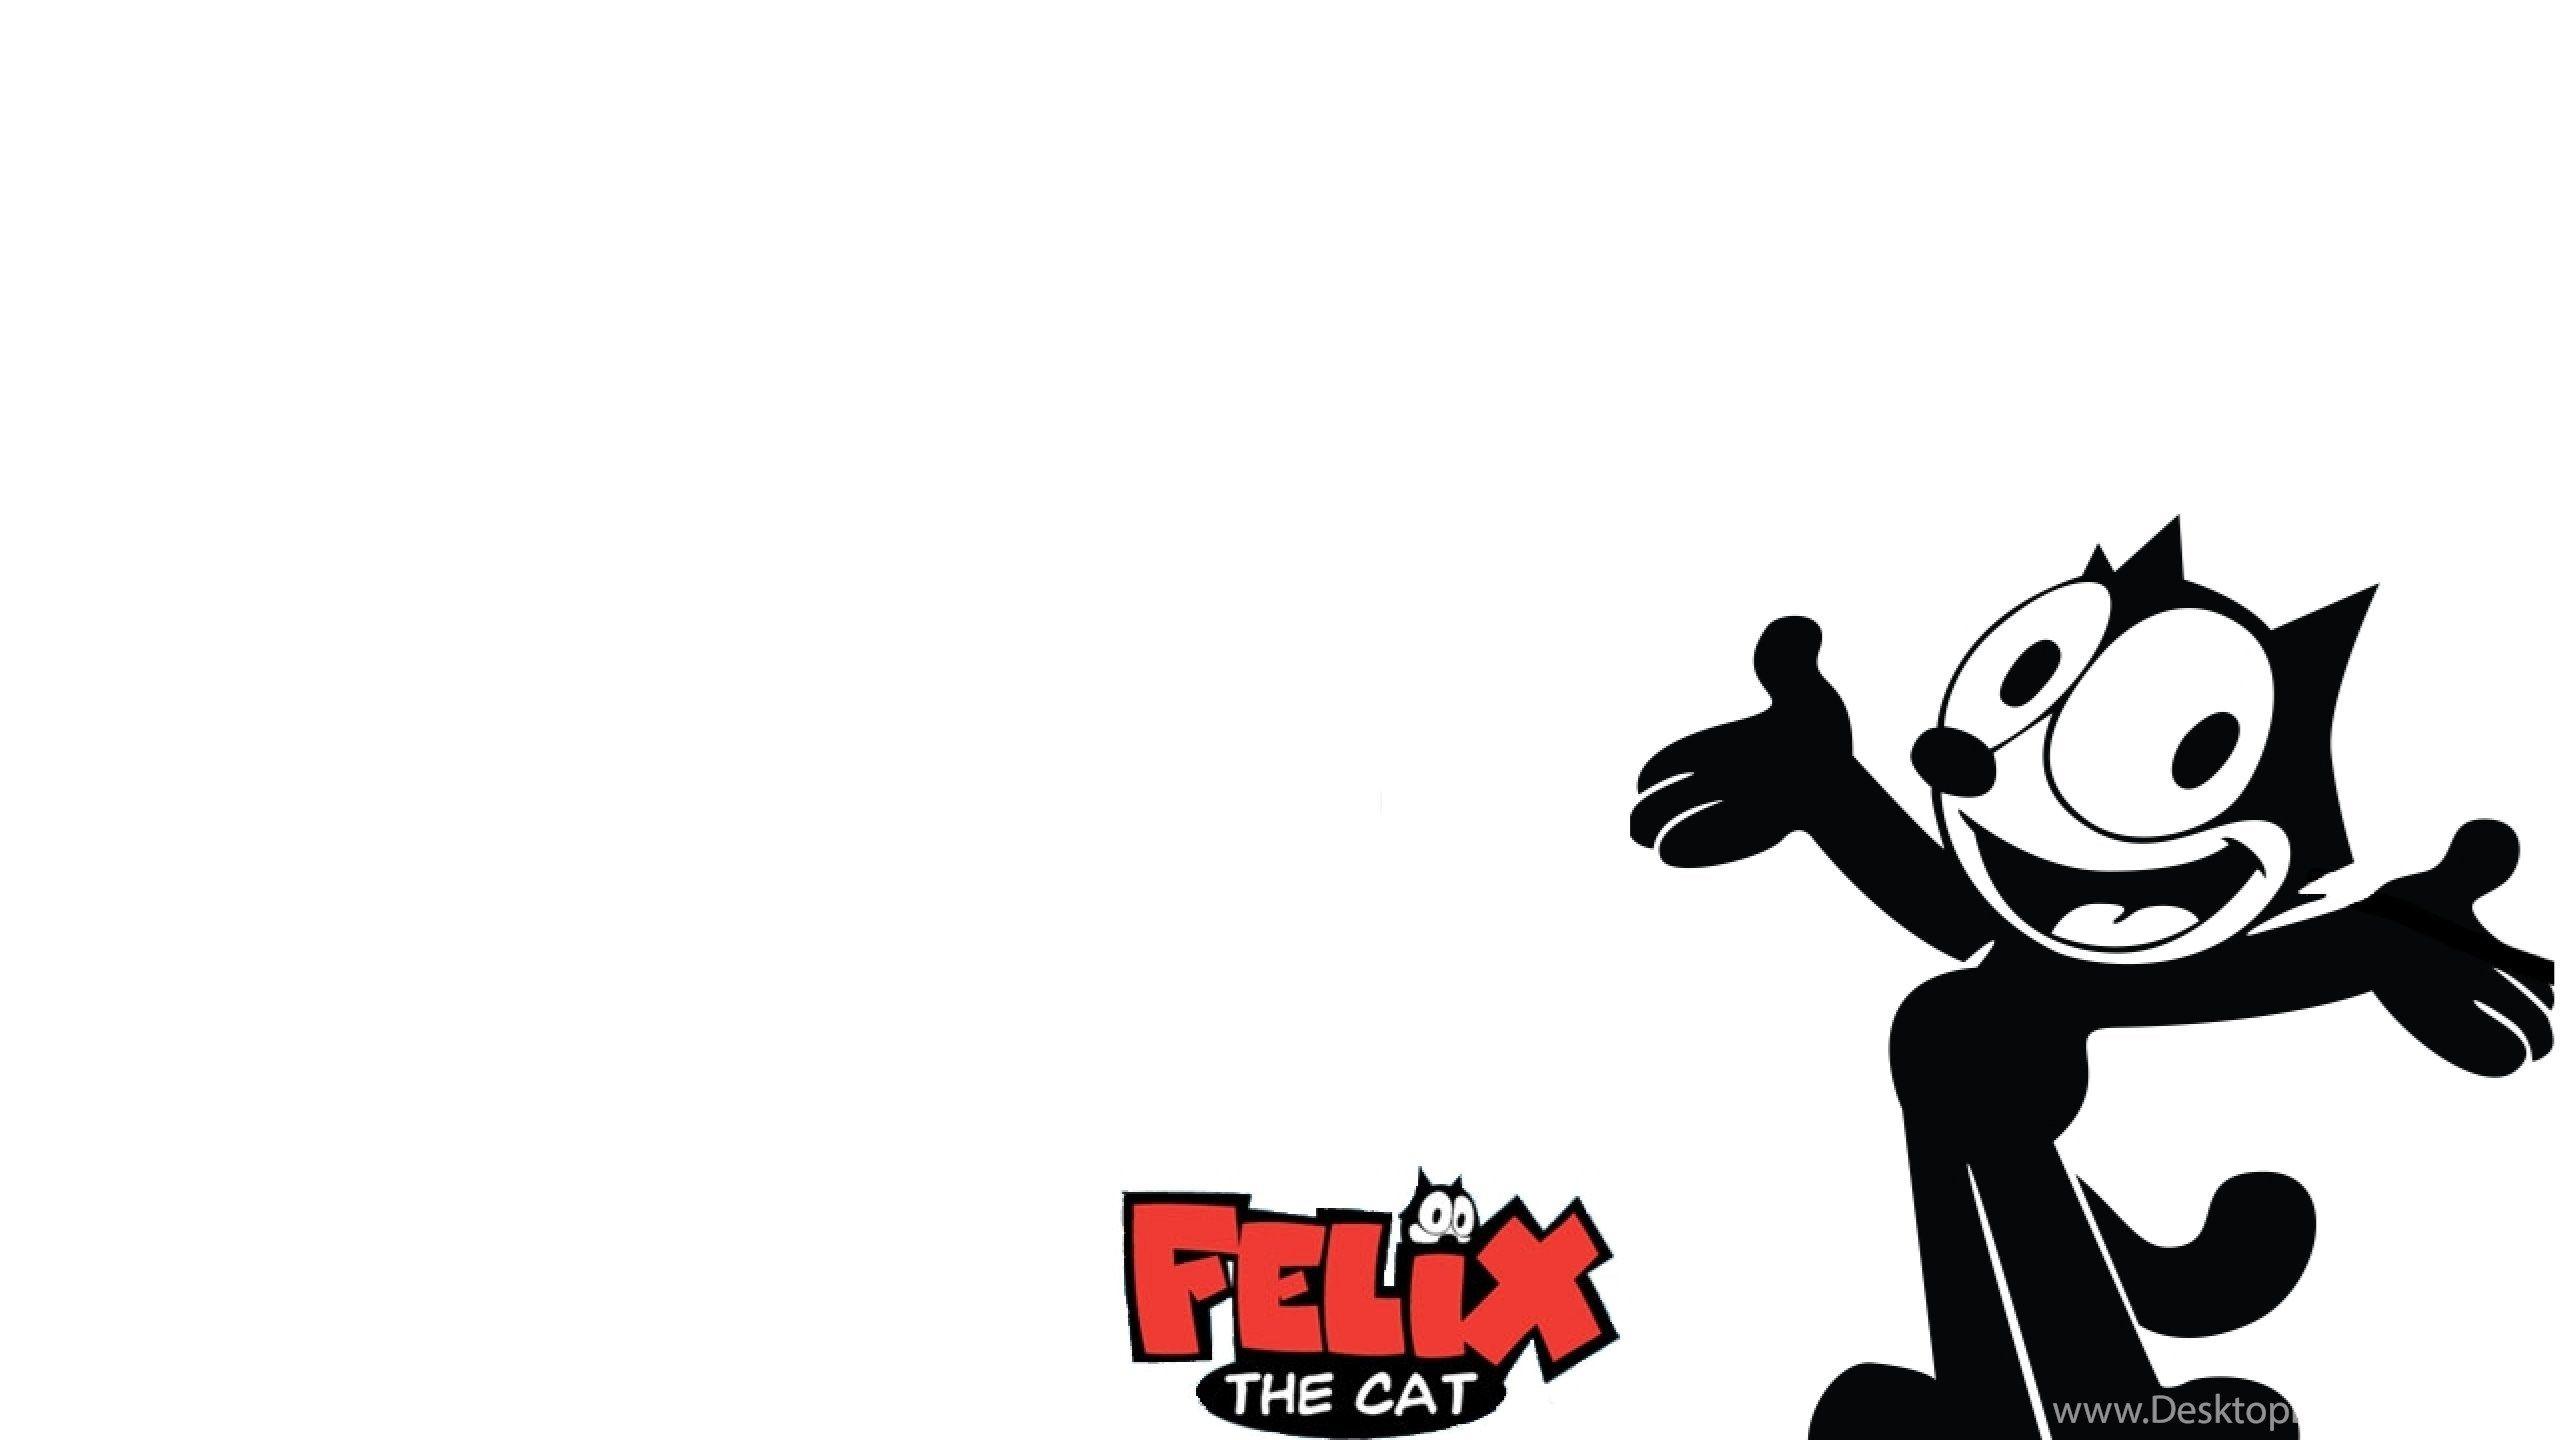 felix the cat wallpaper hd